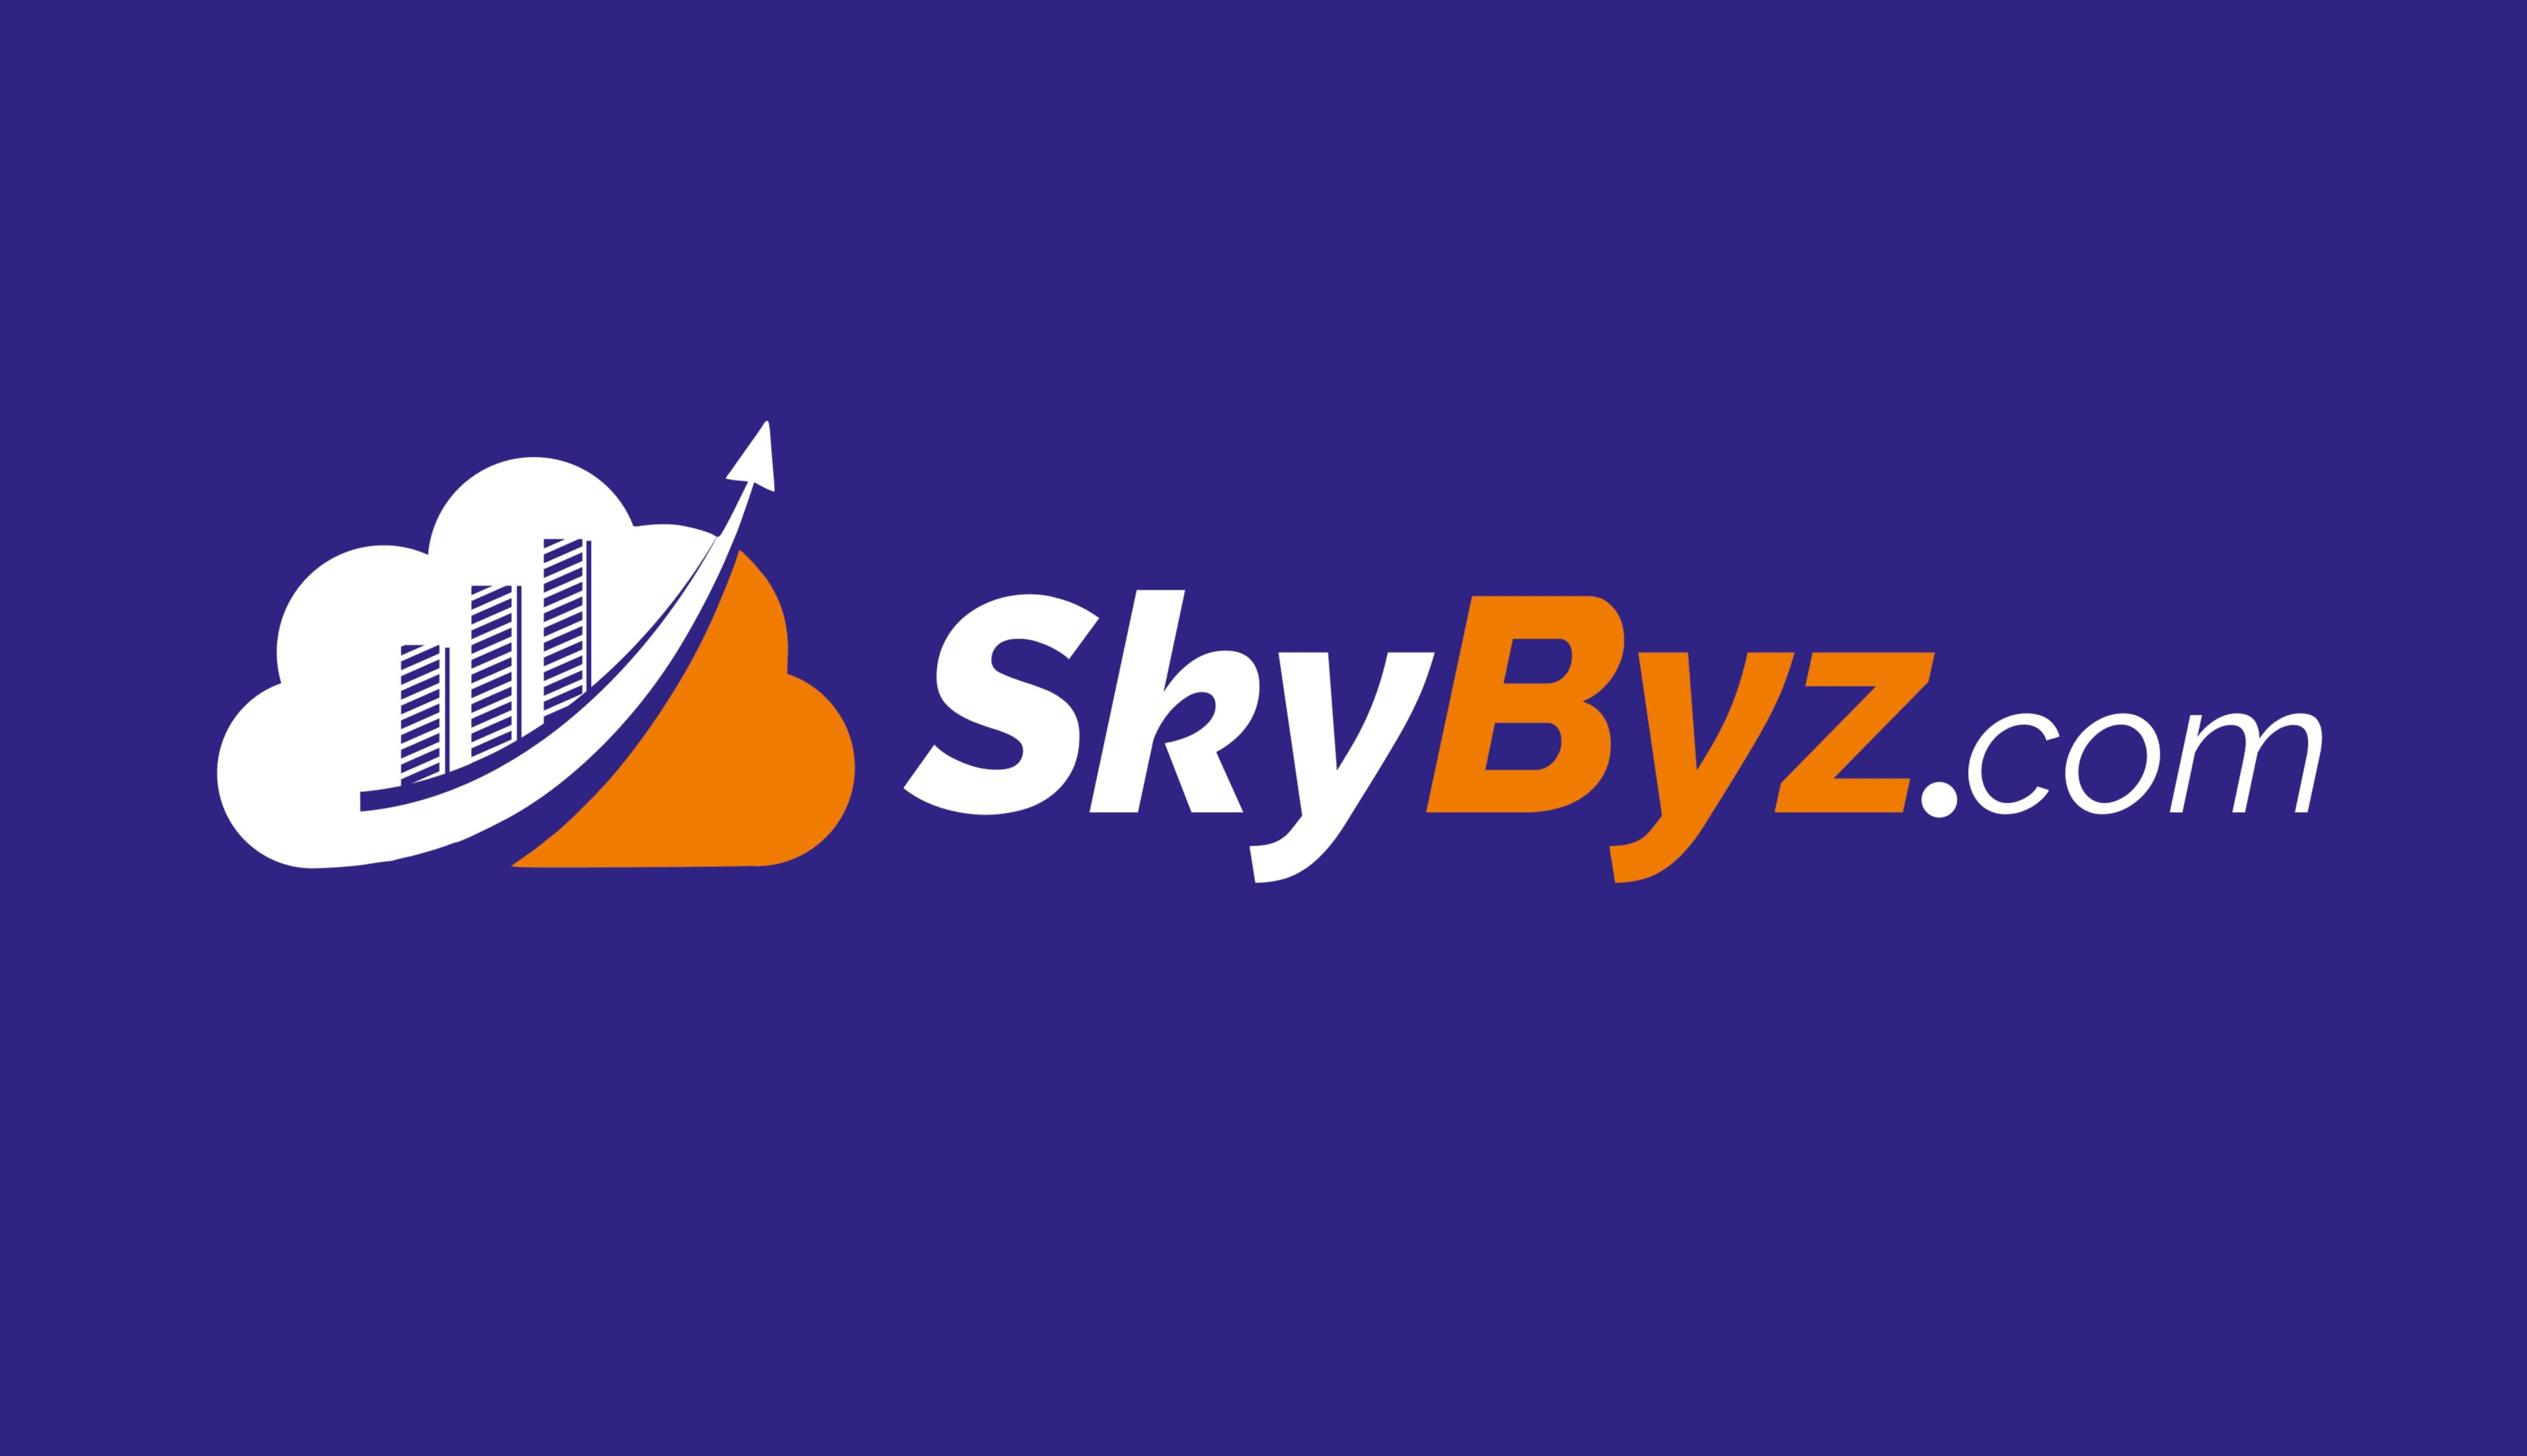 Skybyz Digital Media Private Limited